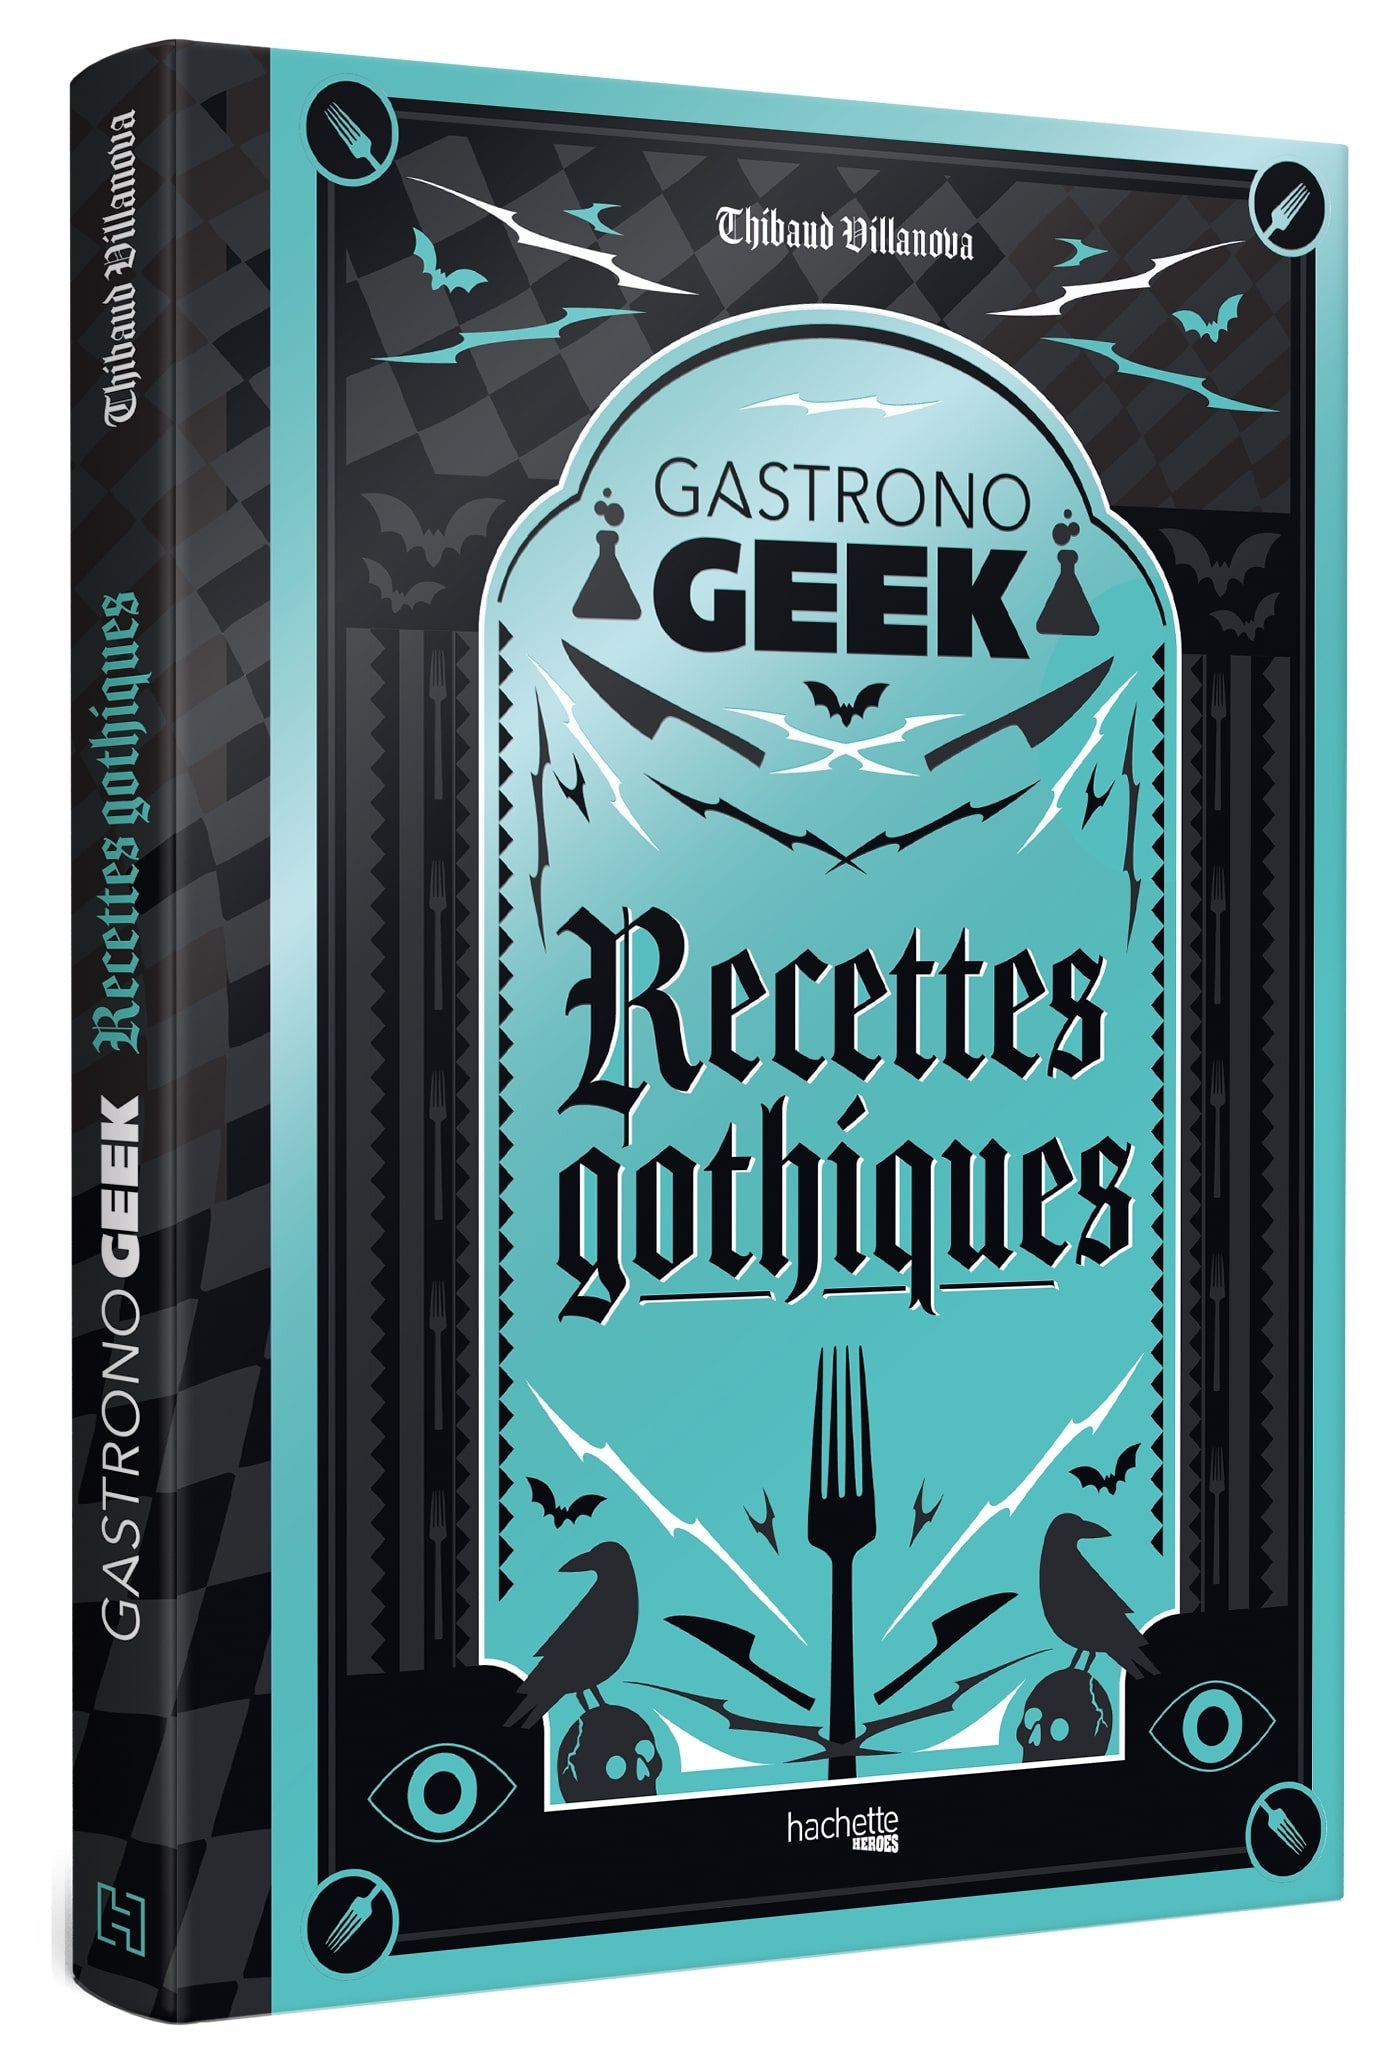 Gastrono GEEK Recettes gothiques    - Hachette Ed. - Livre de cuisine - 